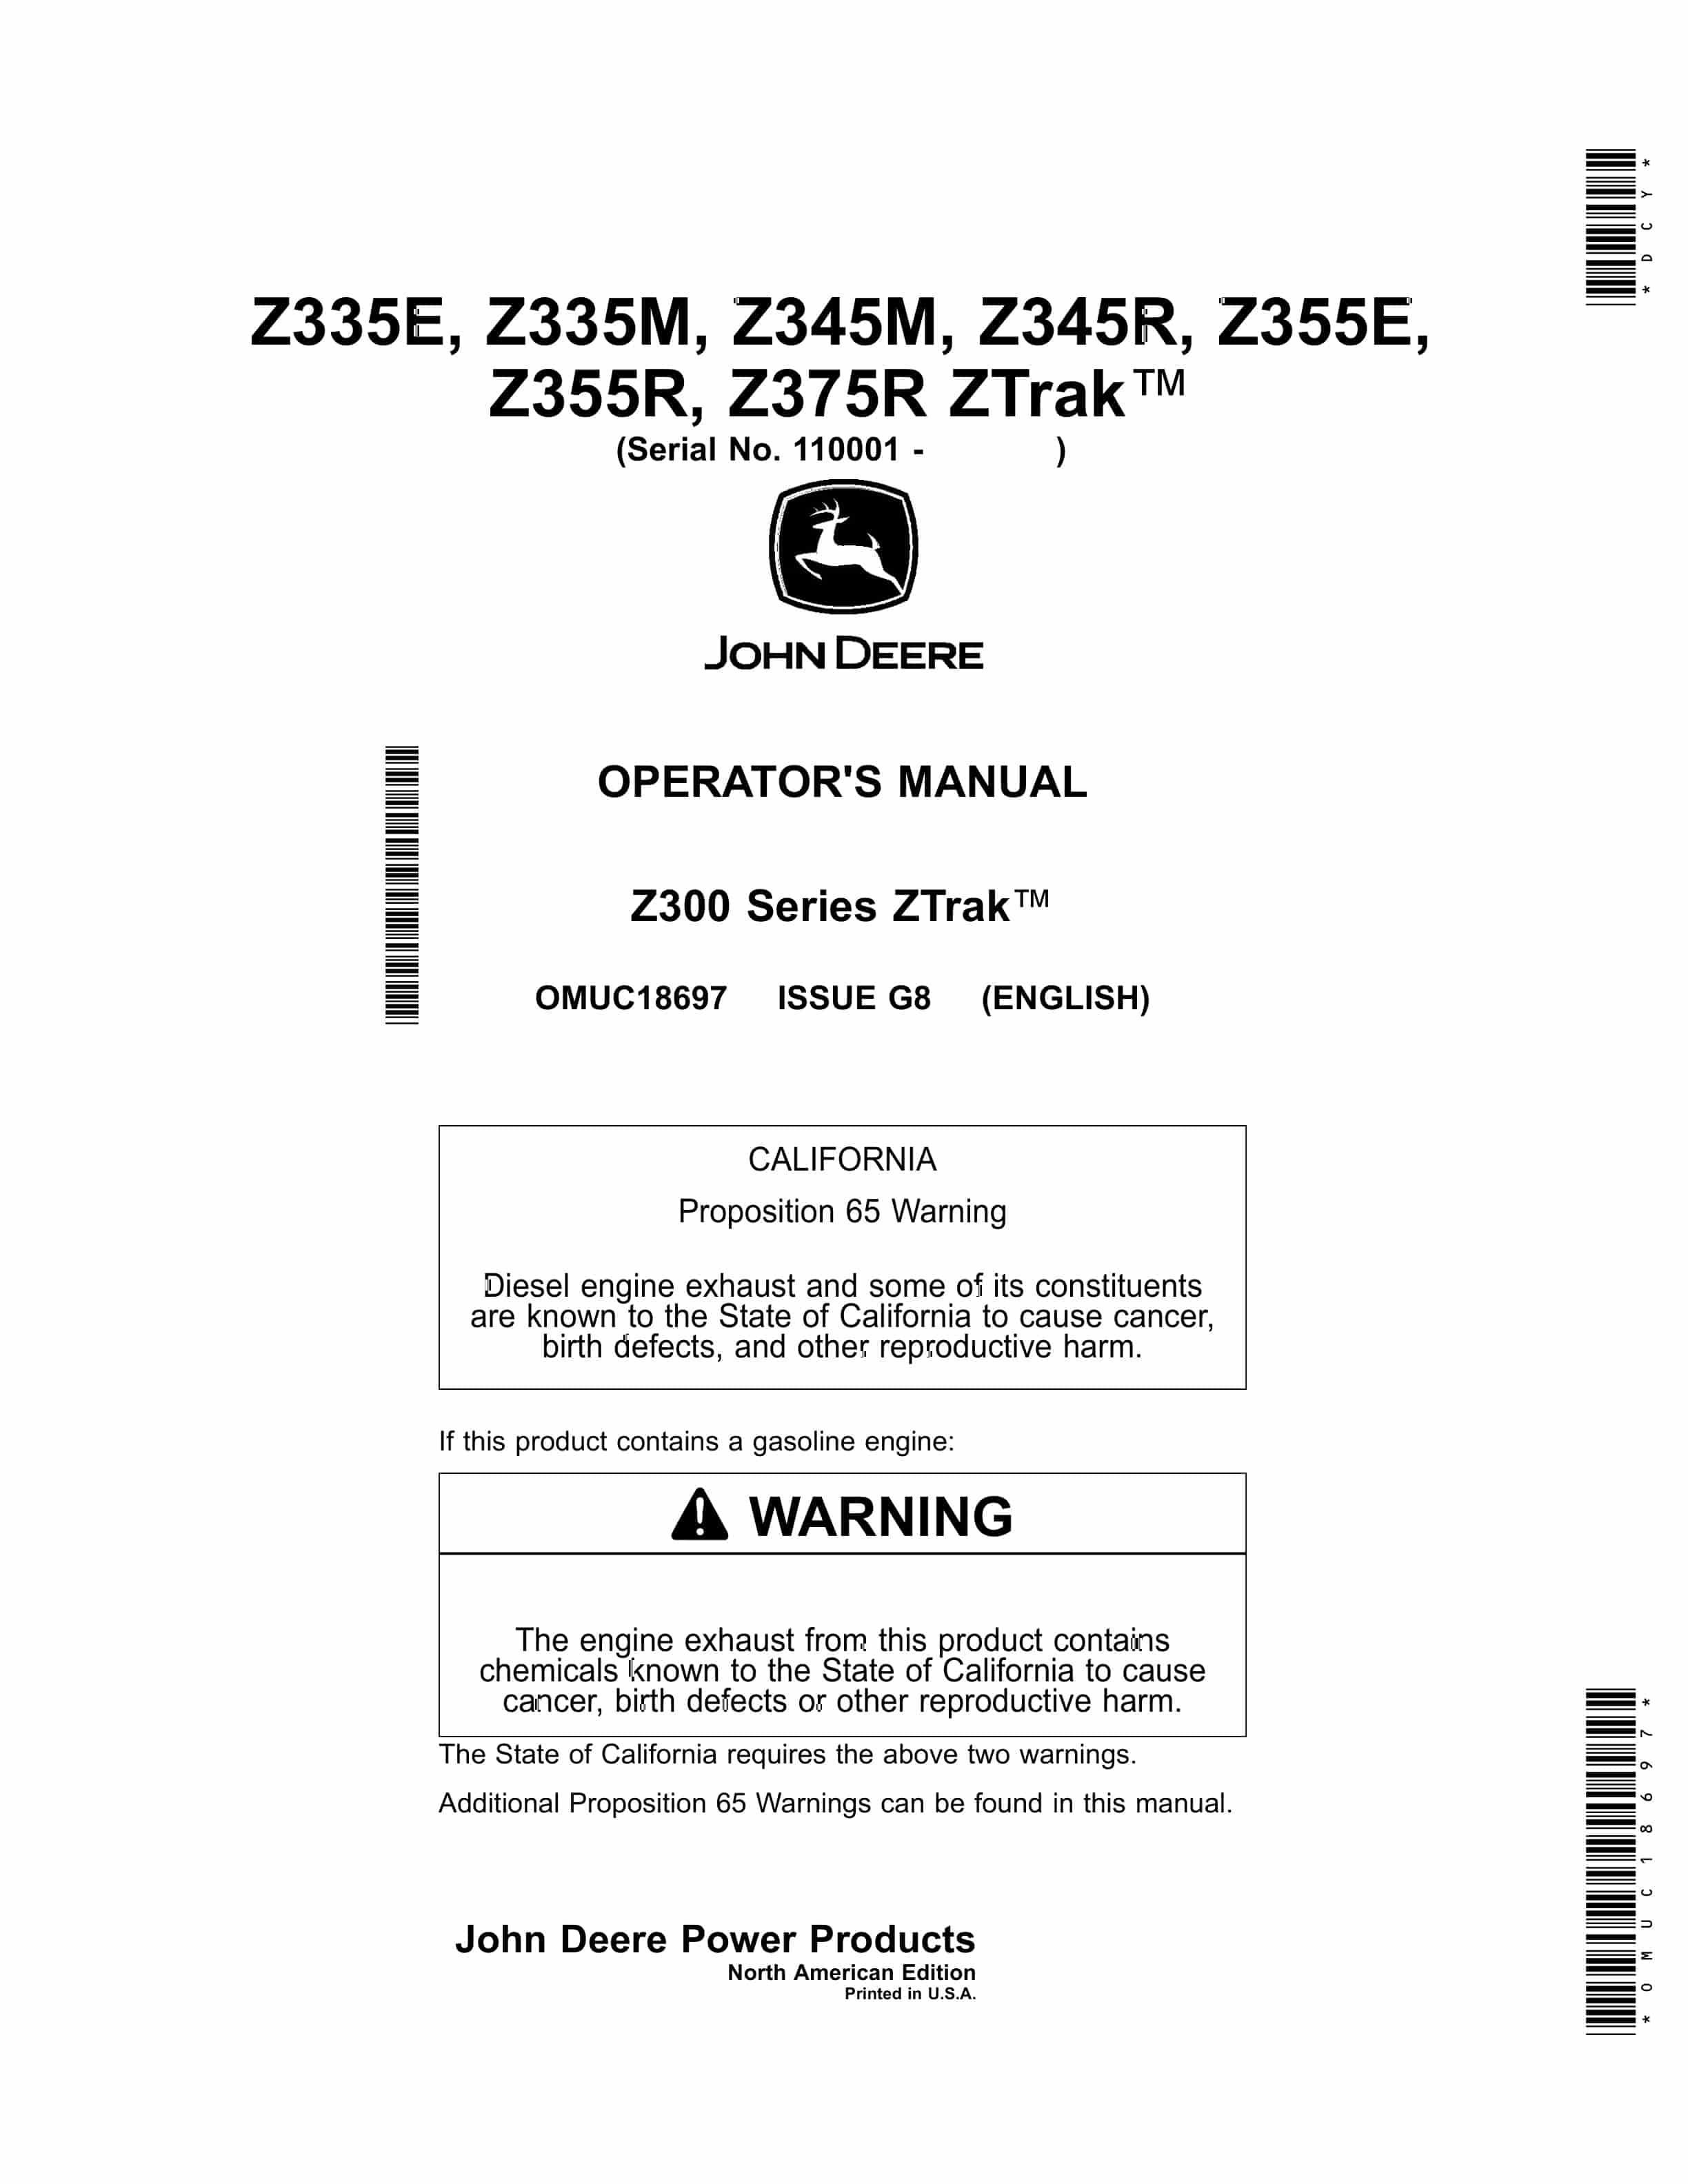 John Deere Z335E Z335M Z345M Z345R Z355E Z355R Z375R ZTrak Operator Manual OMUC18697 1